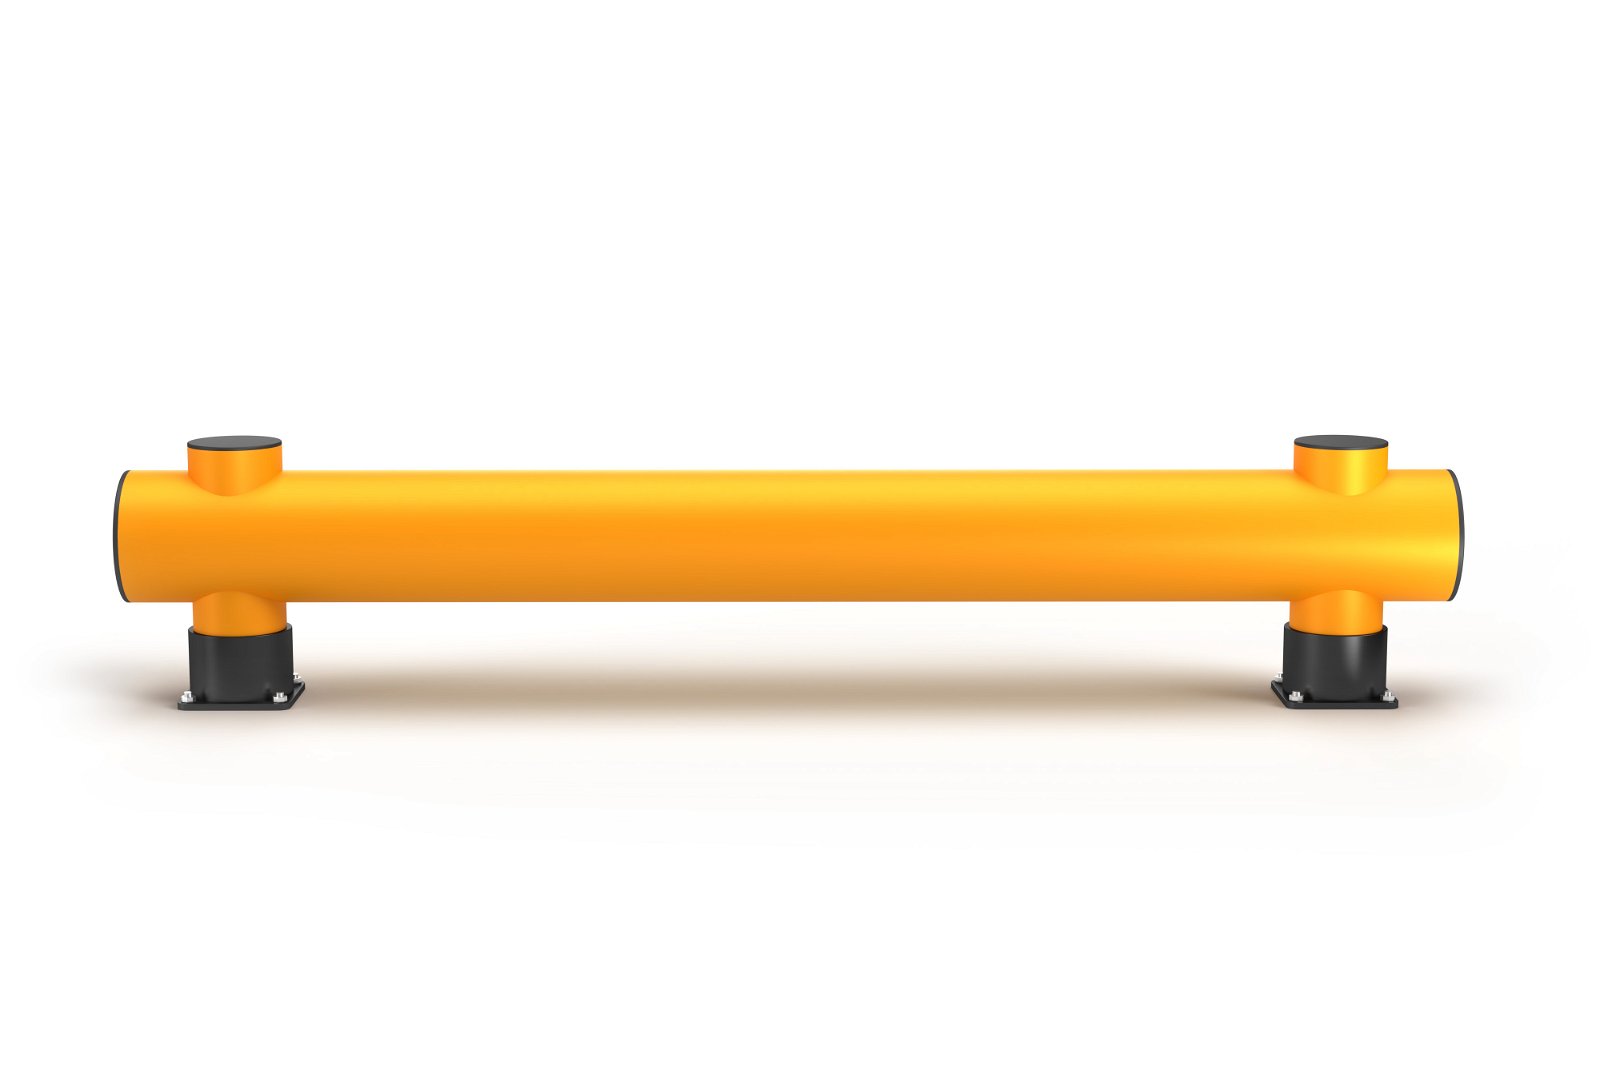 Modellbeispiel: Rammschutzbarriere Einzelplanke -RACK-MAMMUT®- in 2 m Länge (Art. 41518.0001)